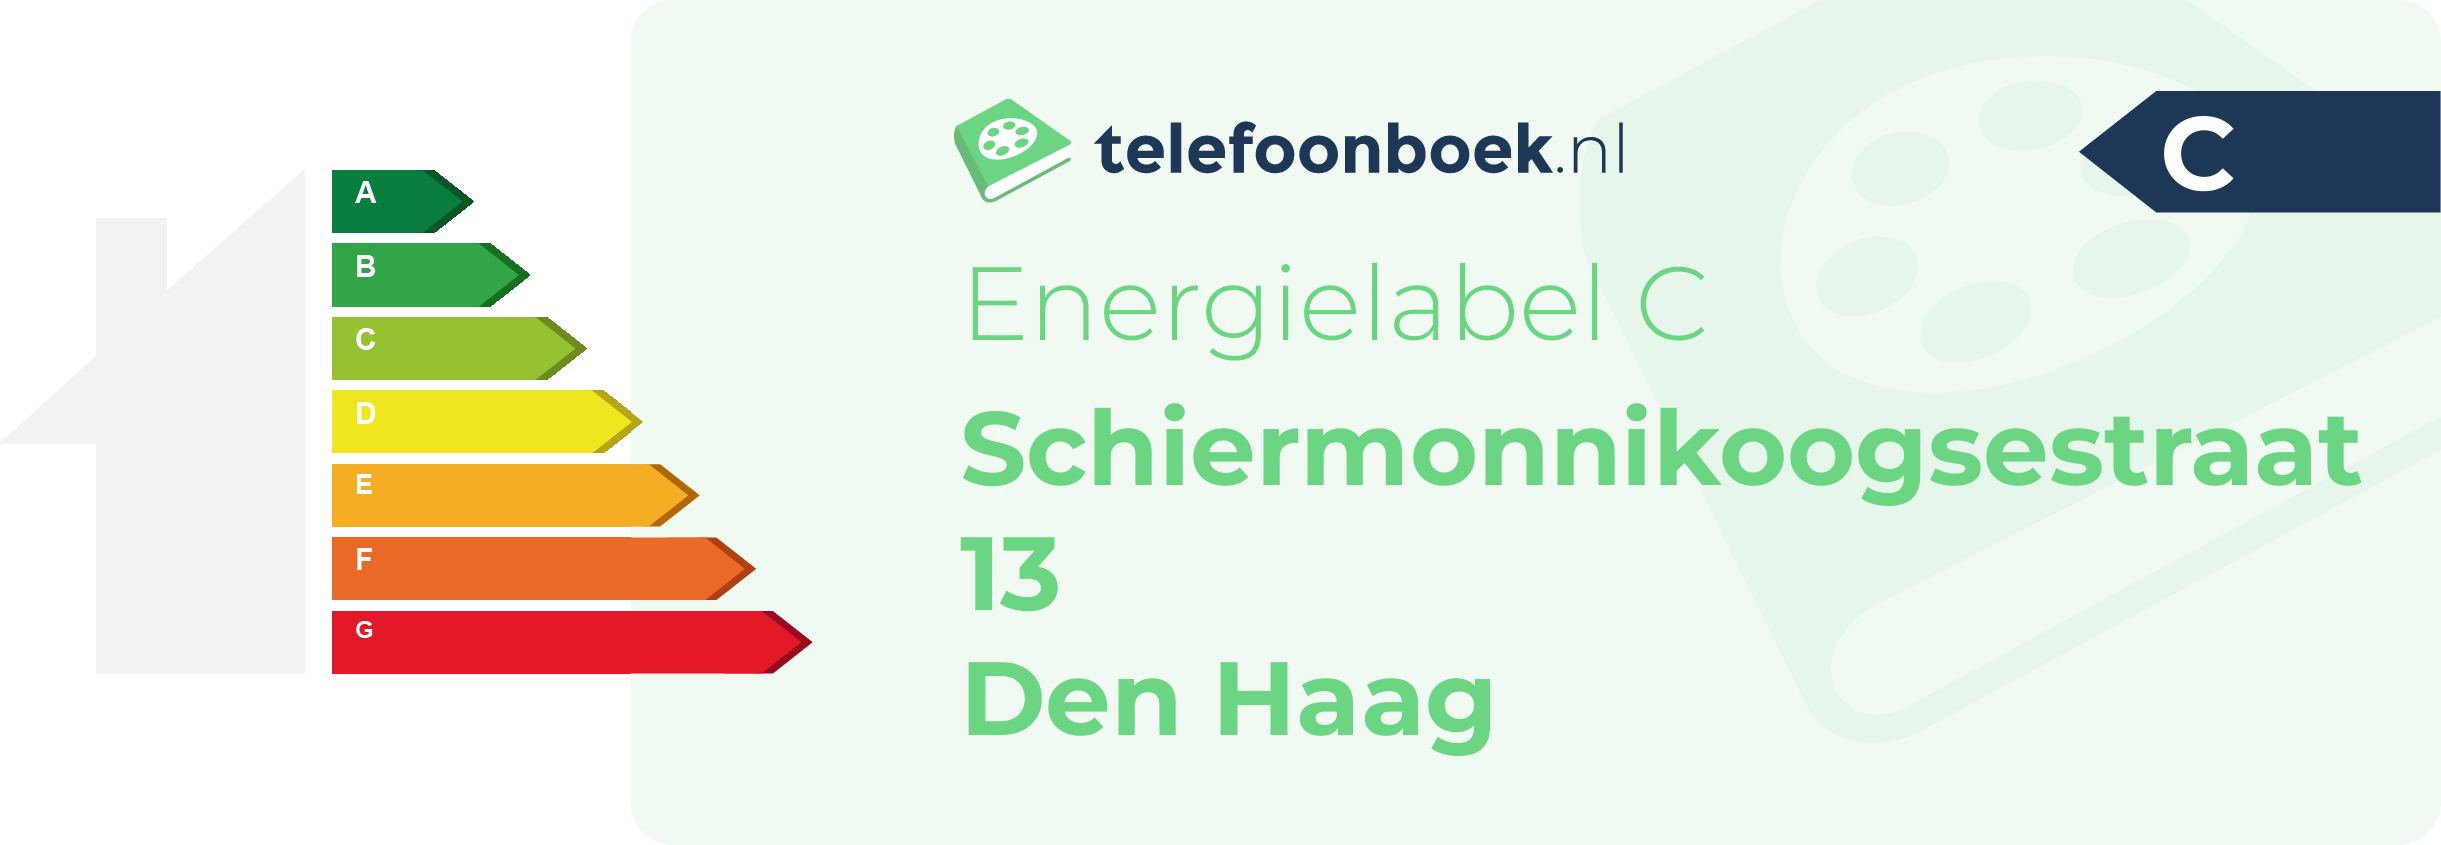 Energielabel Schiermonnikoogsestraat 13 Den Haag